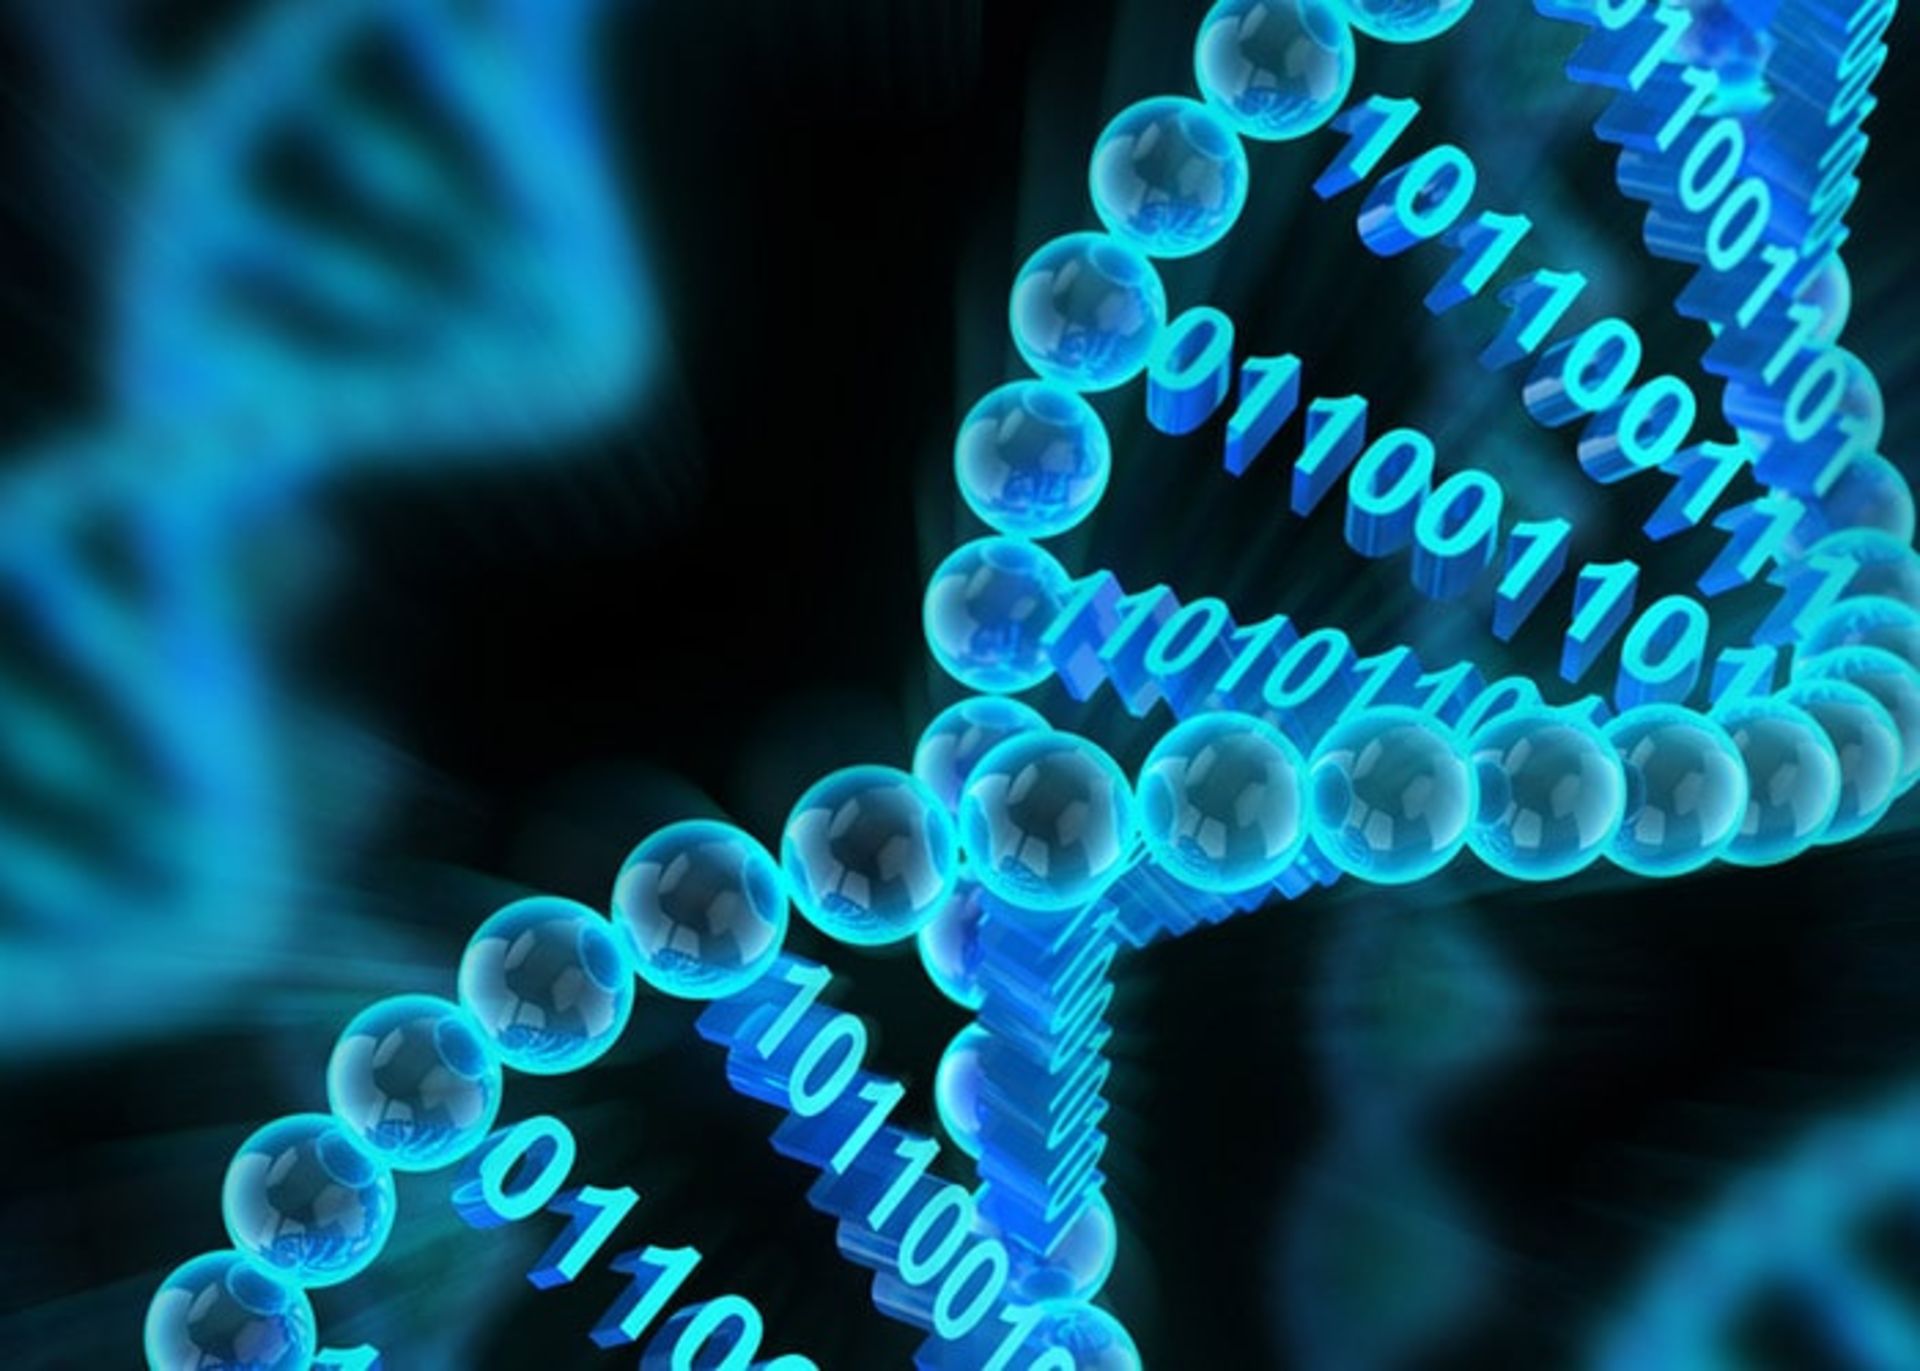 مرجع متخصصين ايران ذخيره اطلاعات در DNA